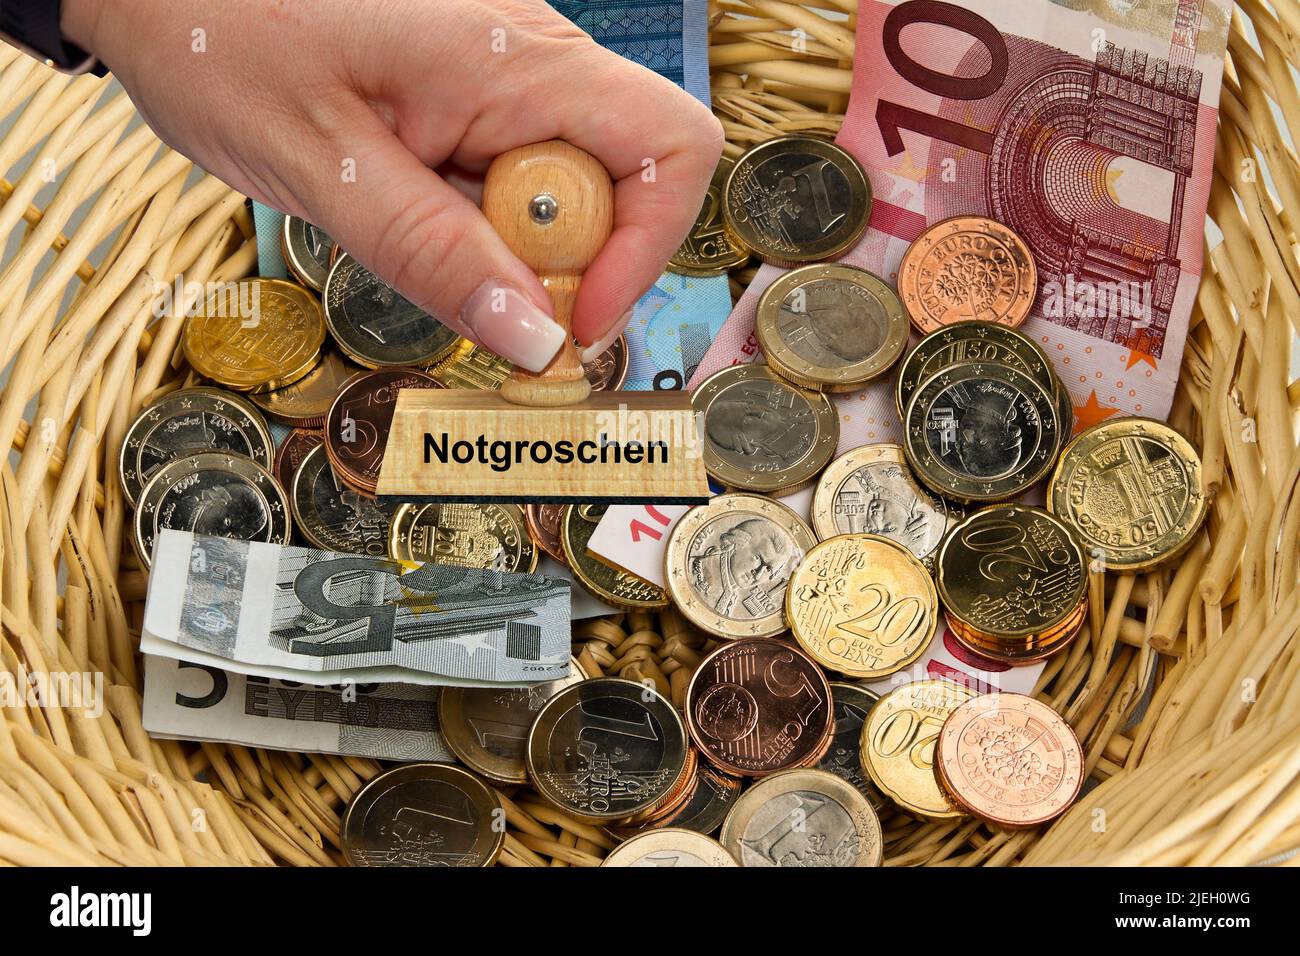 Viele verschiedene Euro-Banknoten und Münzen in einem. Korb, Stempel, Frauenhand, Notgroschen, Mindesteinkommen, Stock Photo